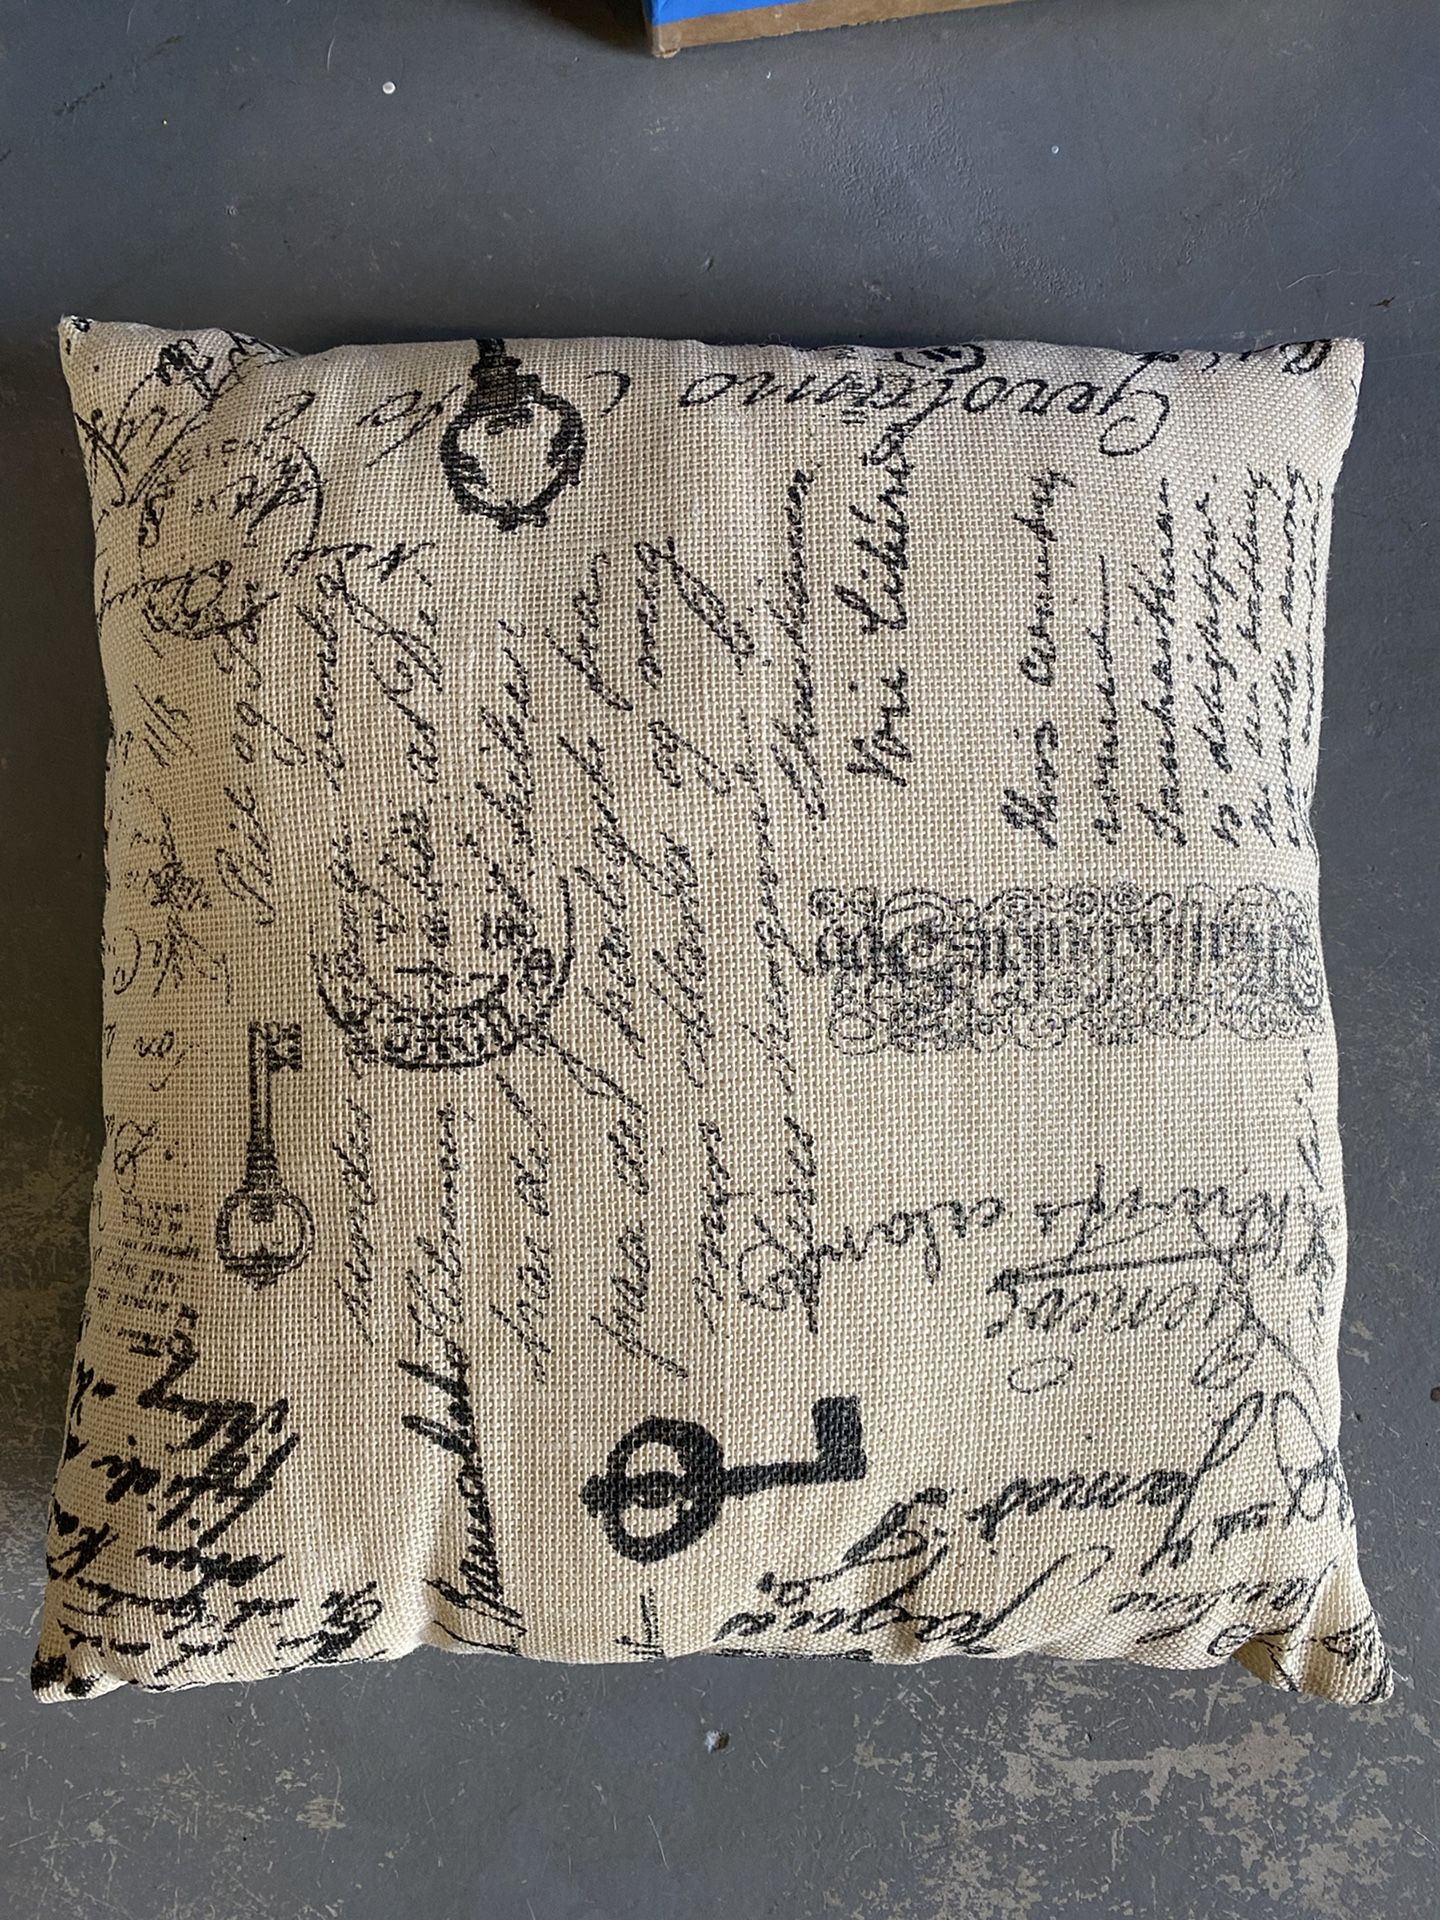 Throw / decorative pillow 16x16”